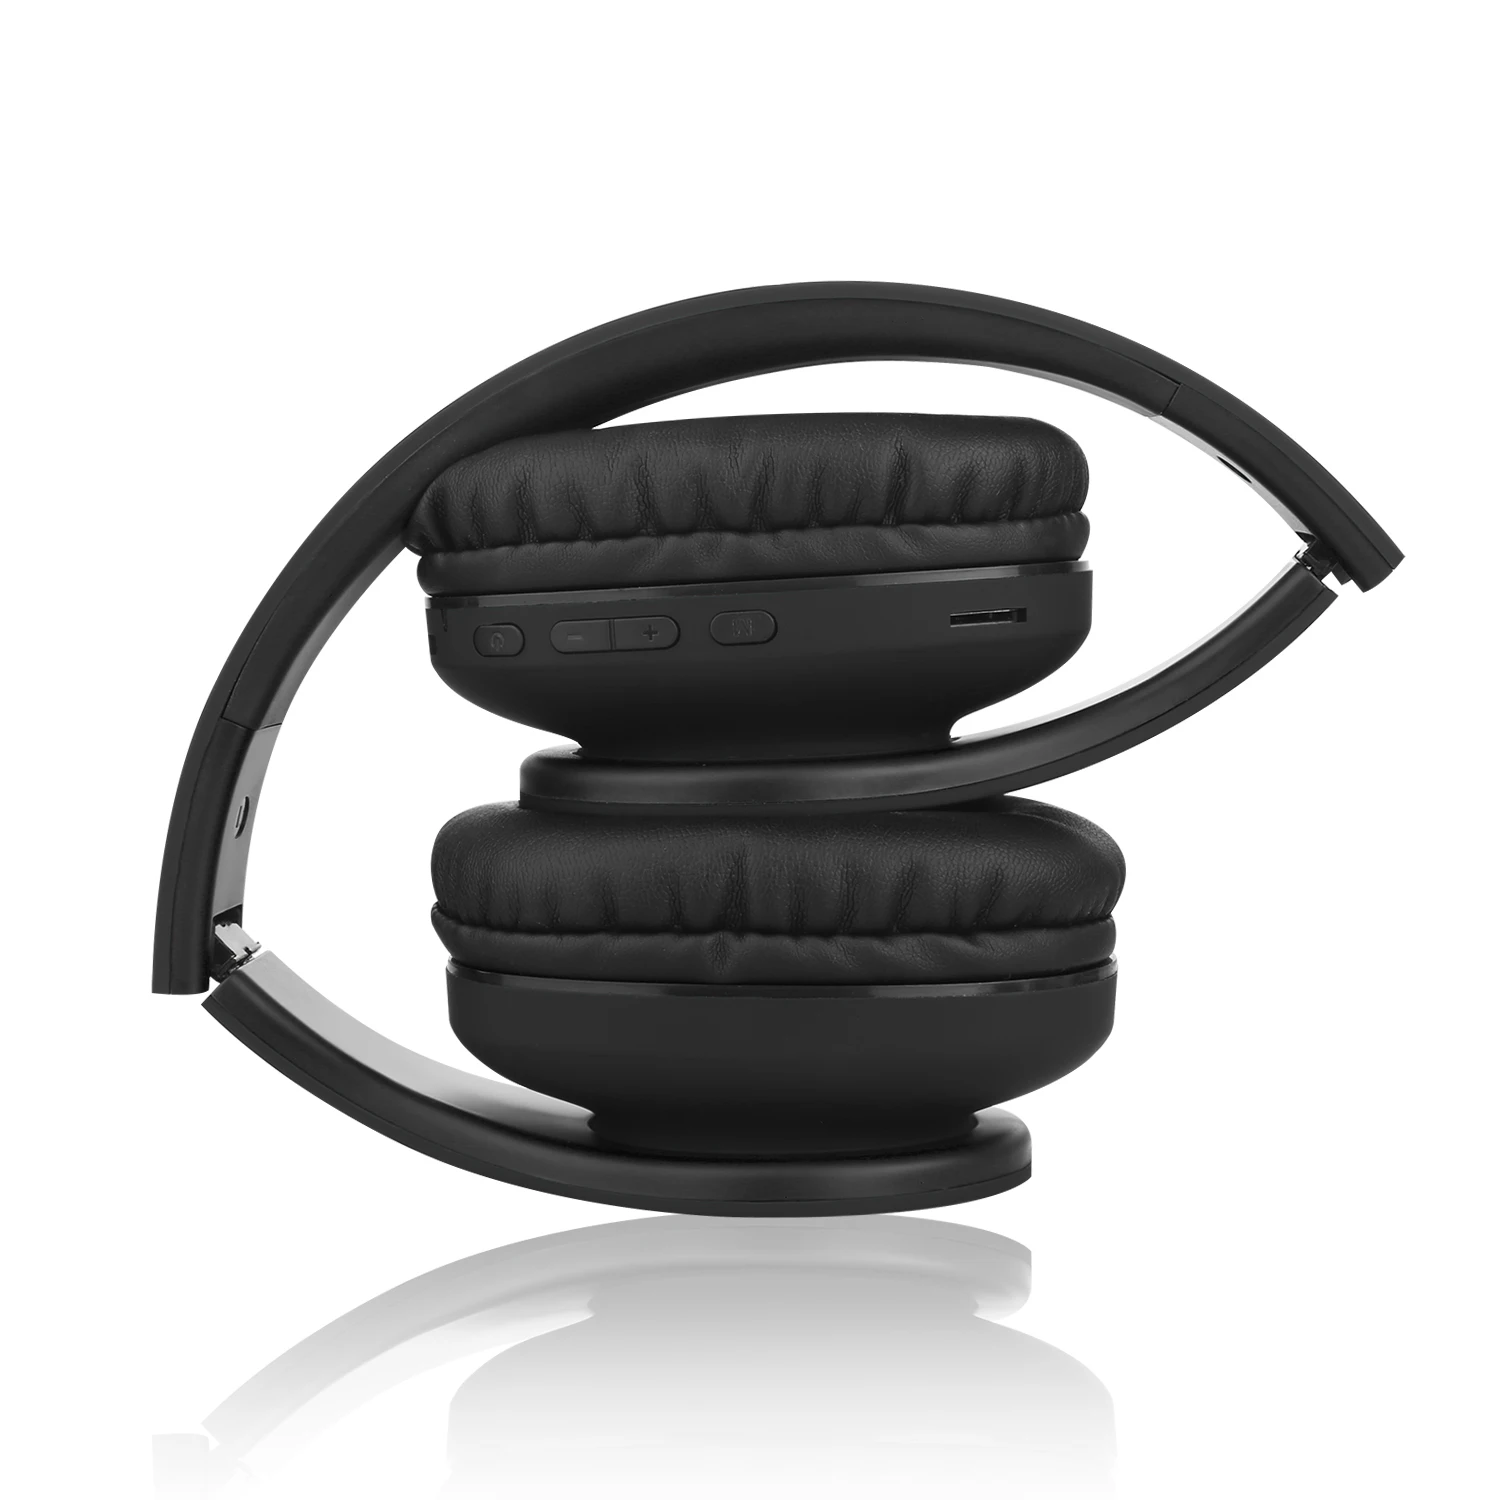 Compre Bt868 Digital Bluetooth Mp3 Música Auriculares Con Radio Fm  Incorporada y Auriculares Bluetooth Inalámbricos de China por 3.16 USD